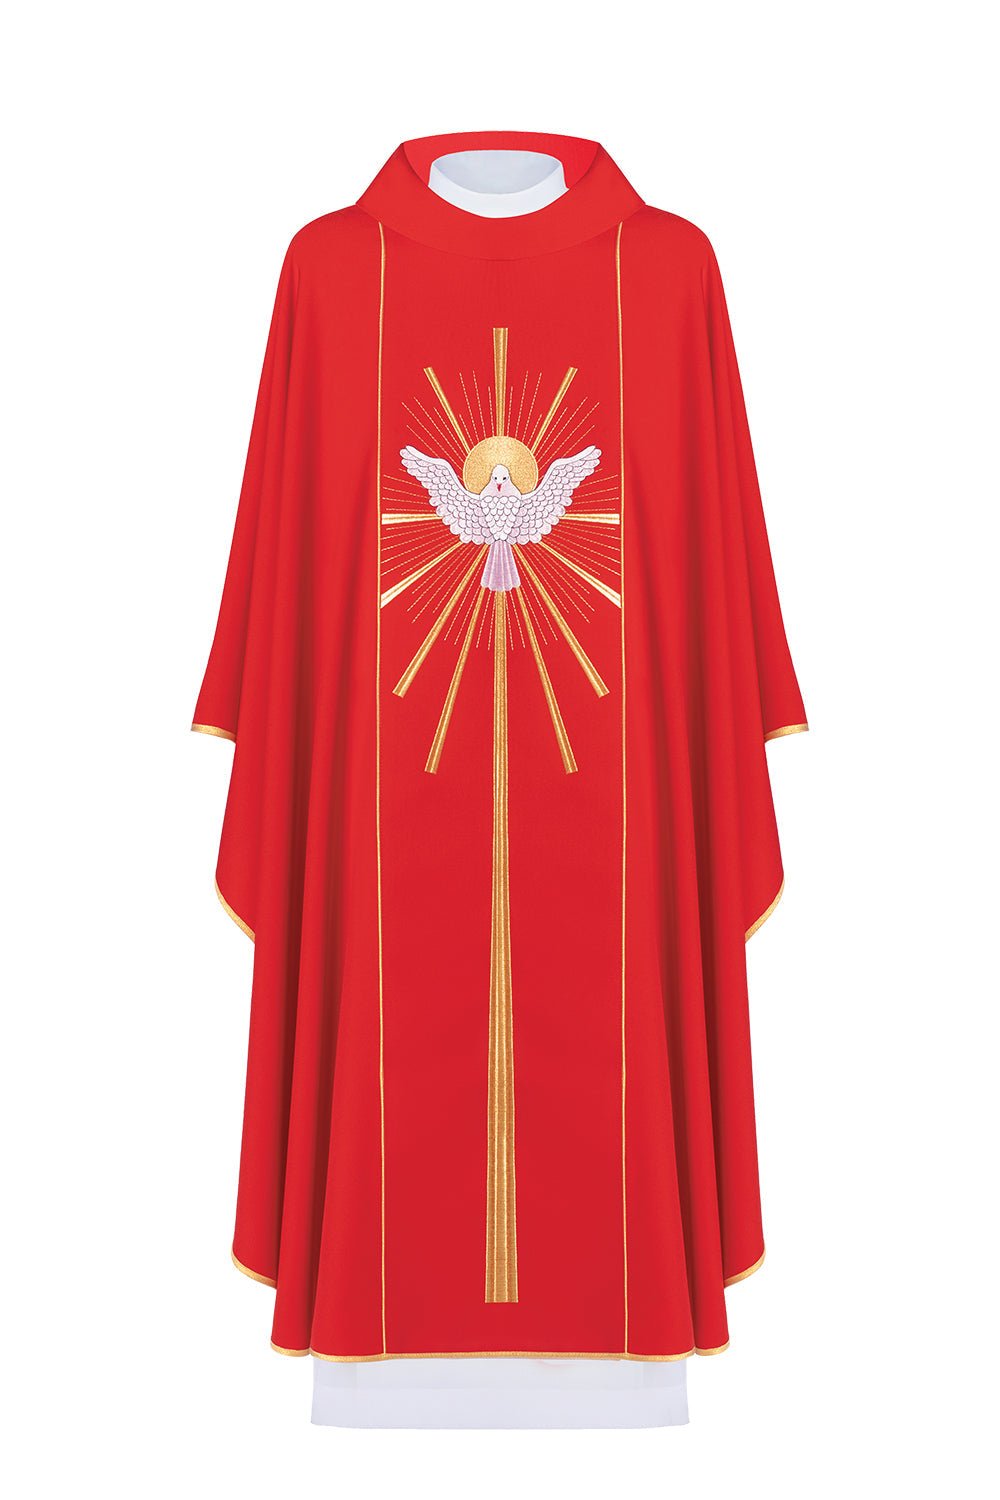 Ornat haftowany z Duchem Świętym w kolorze czerwonym